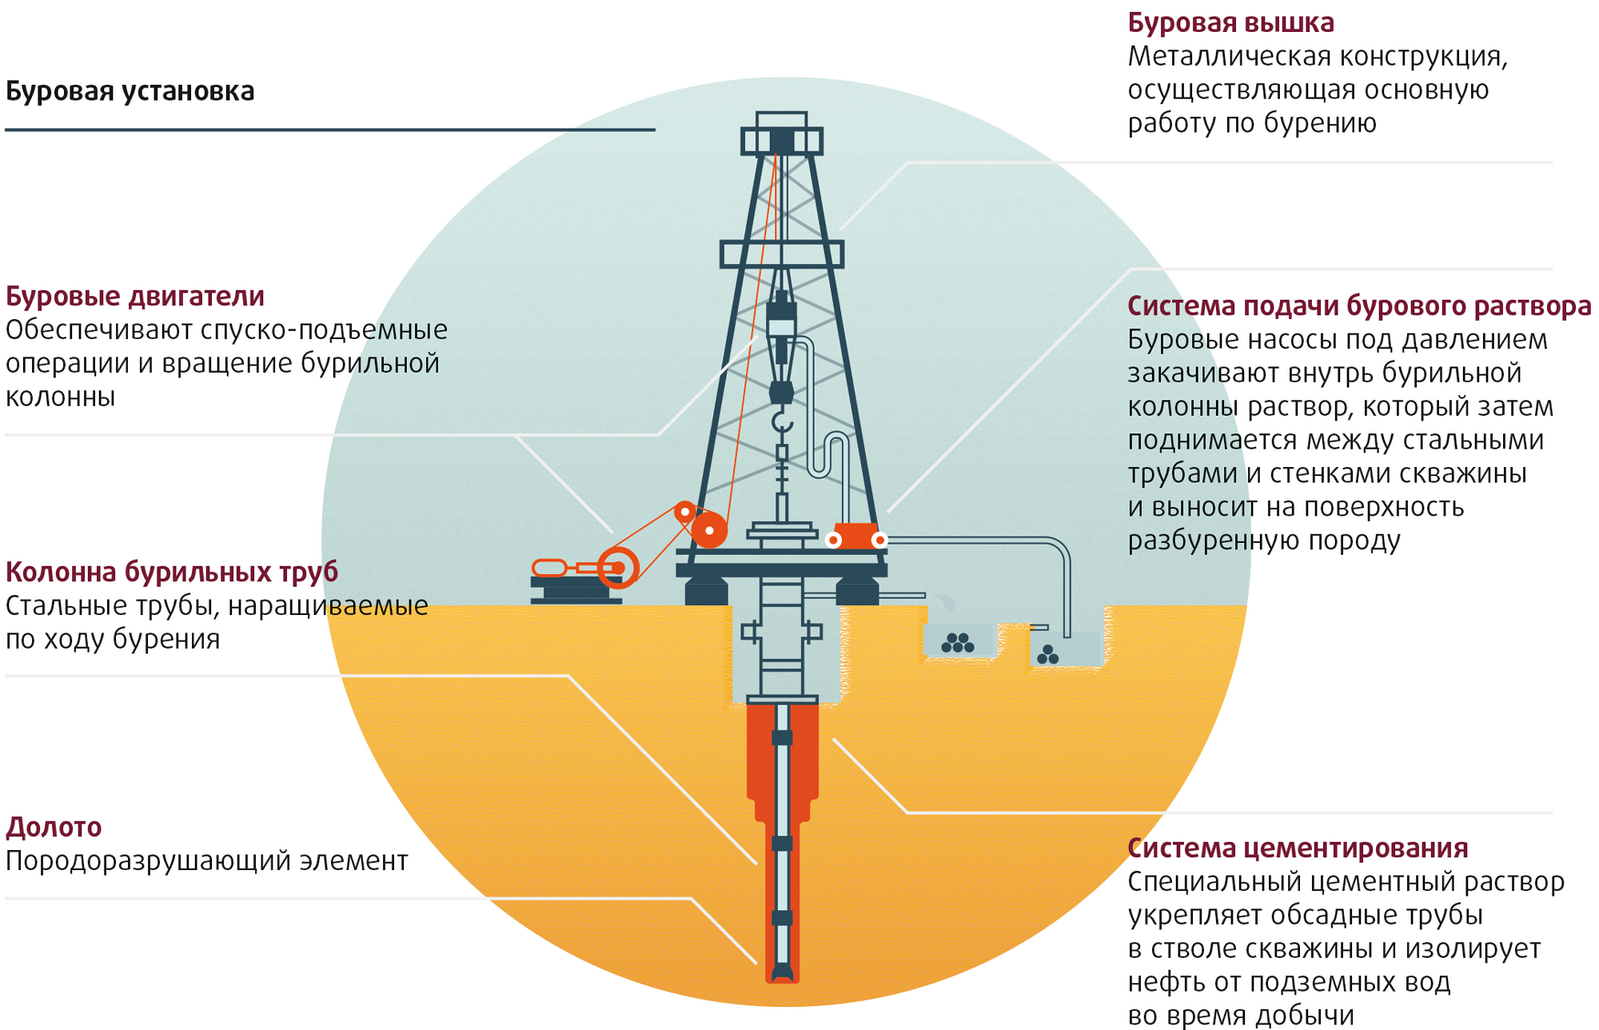 Бурение нефтяных и газовых скважин – специфика геологоразведки и технология проведения работ